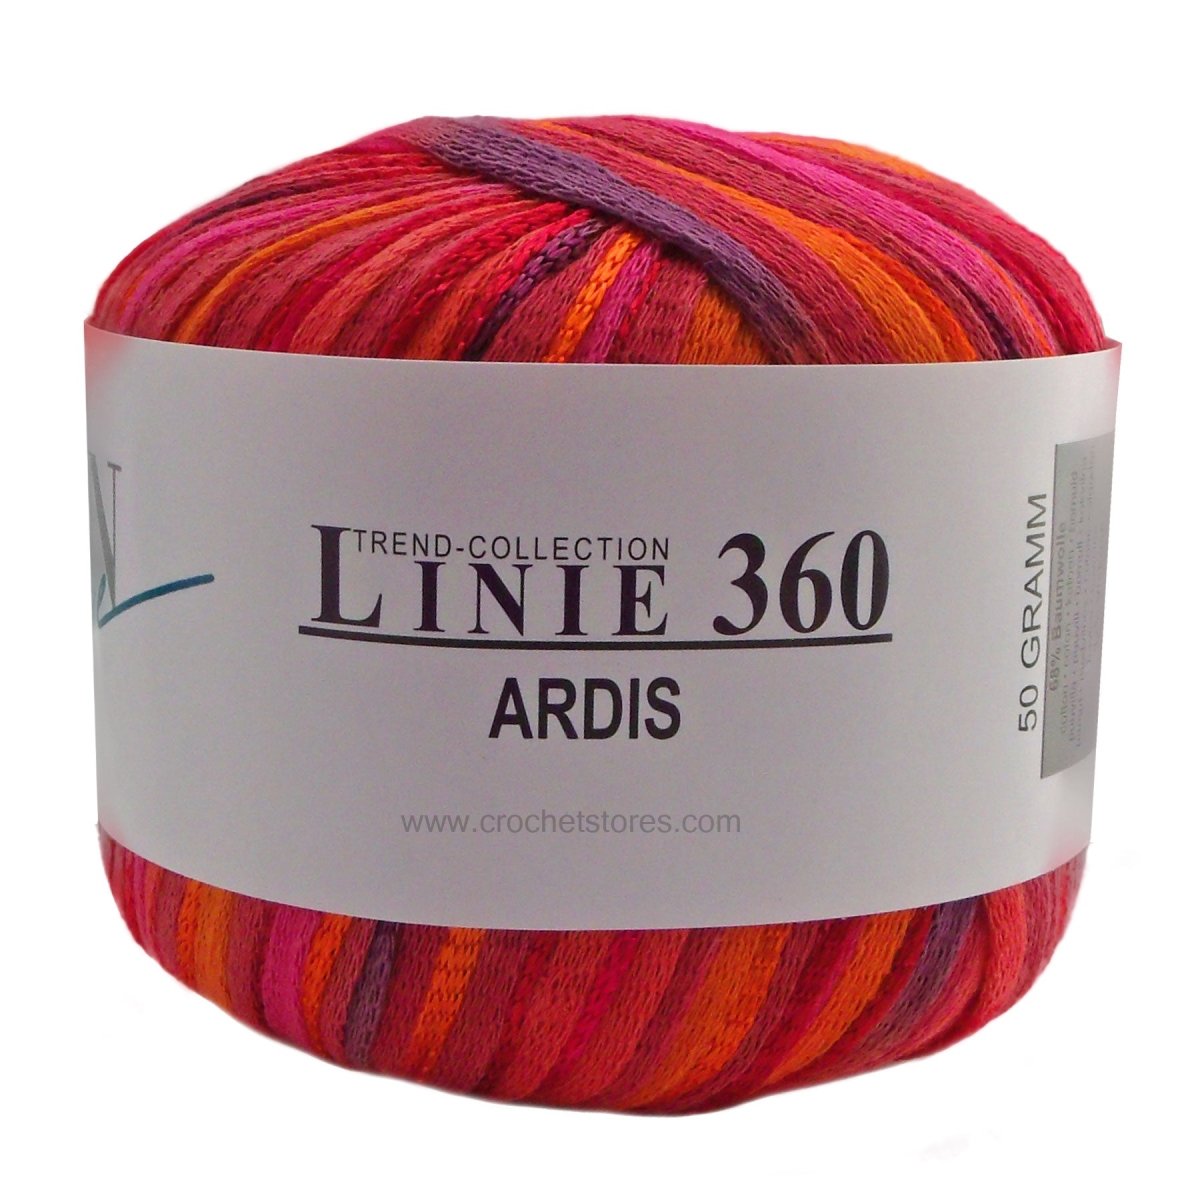 ARDIS - Crochetstores110360-1054014366152781